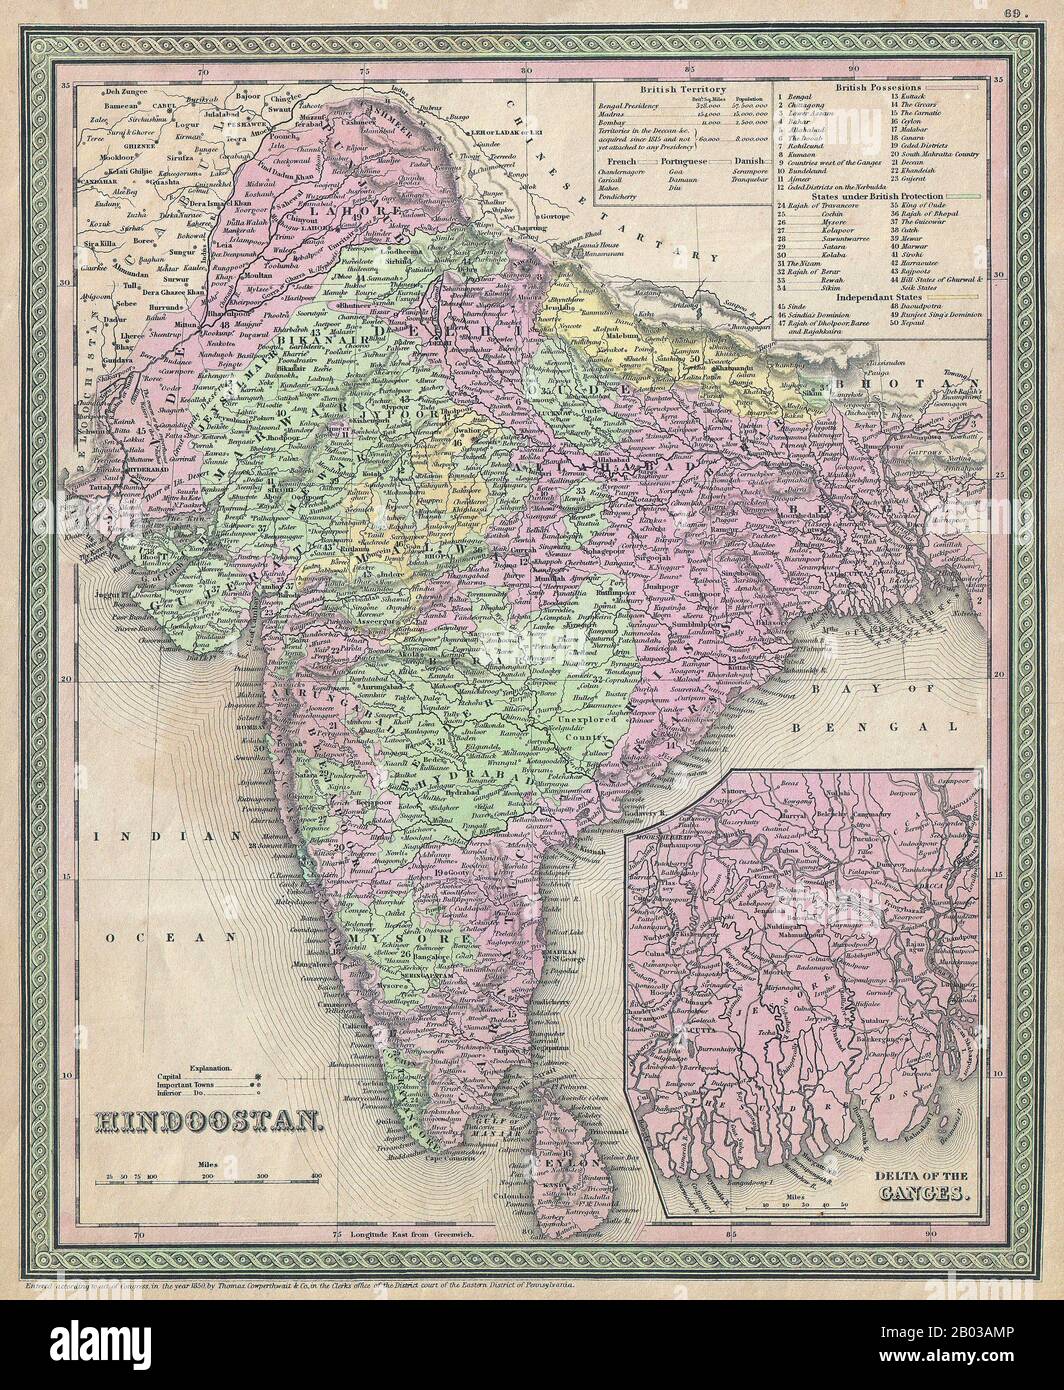 India: Mappa americana del subcontinente indiano, con stati principati e possessi britannici con codice colore, così come un inset inferiore destro che descrive il delta del fiume Ganges. Incisione litografica di Samuel Augustus Mitchell (1790-1868), 1850. Samuel Augustus Mitchell (1790-1868) è stato un . Foto Stock